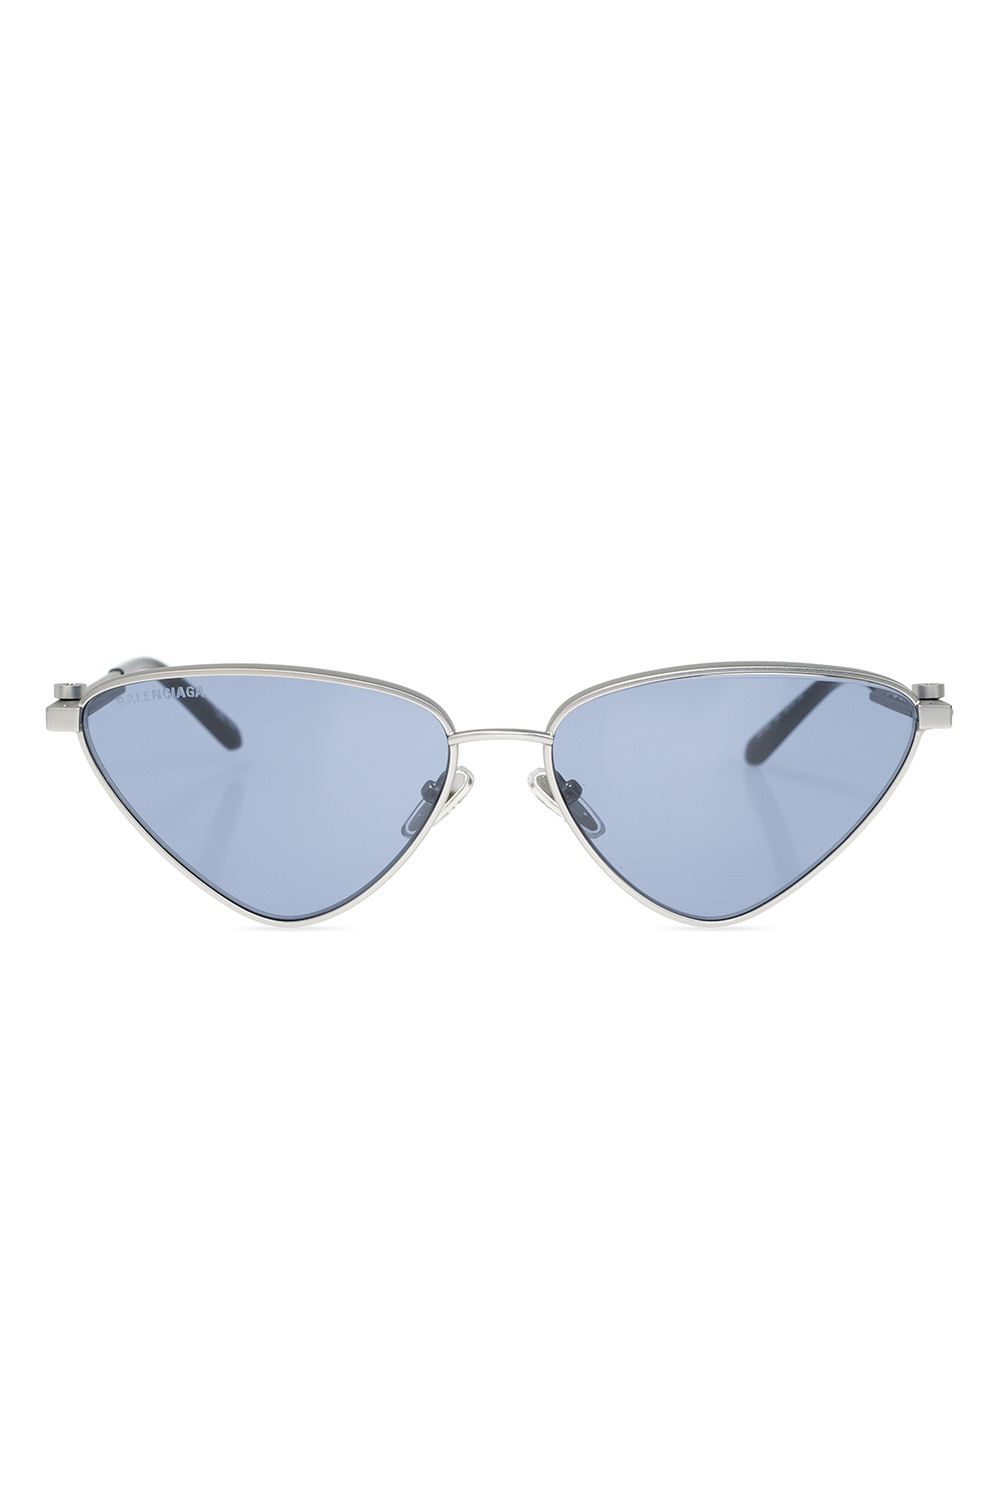 Balenciaga Brunello sunglasses